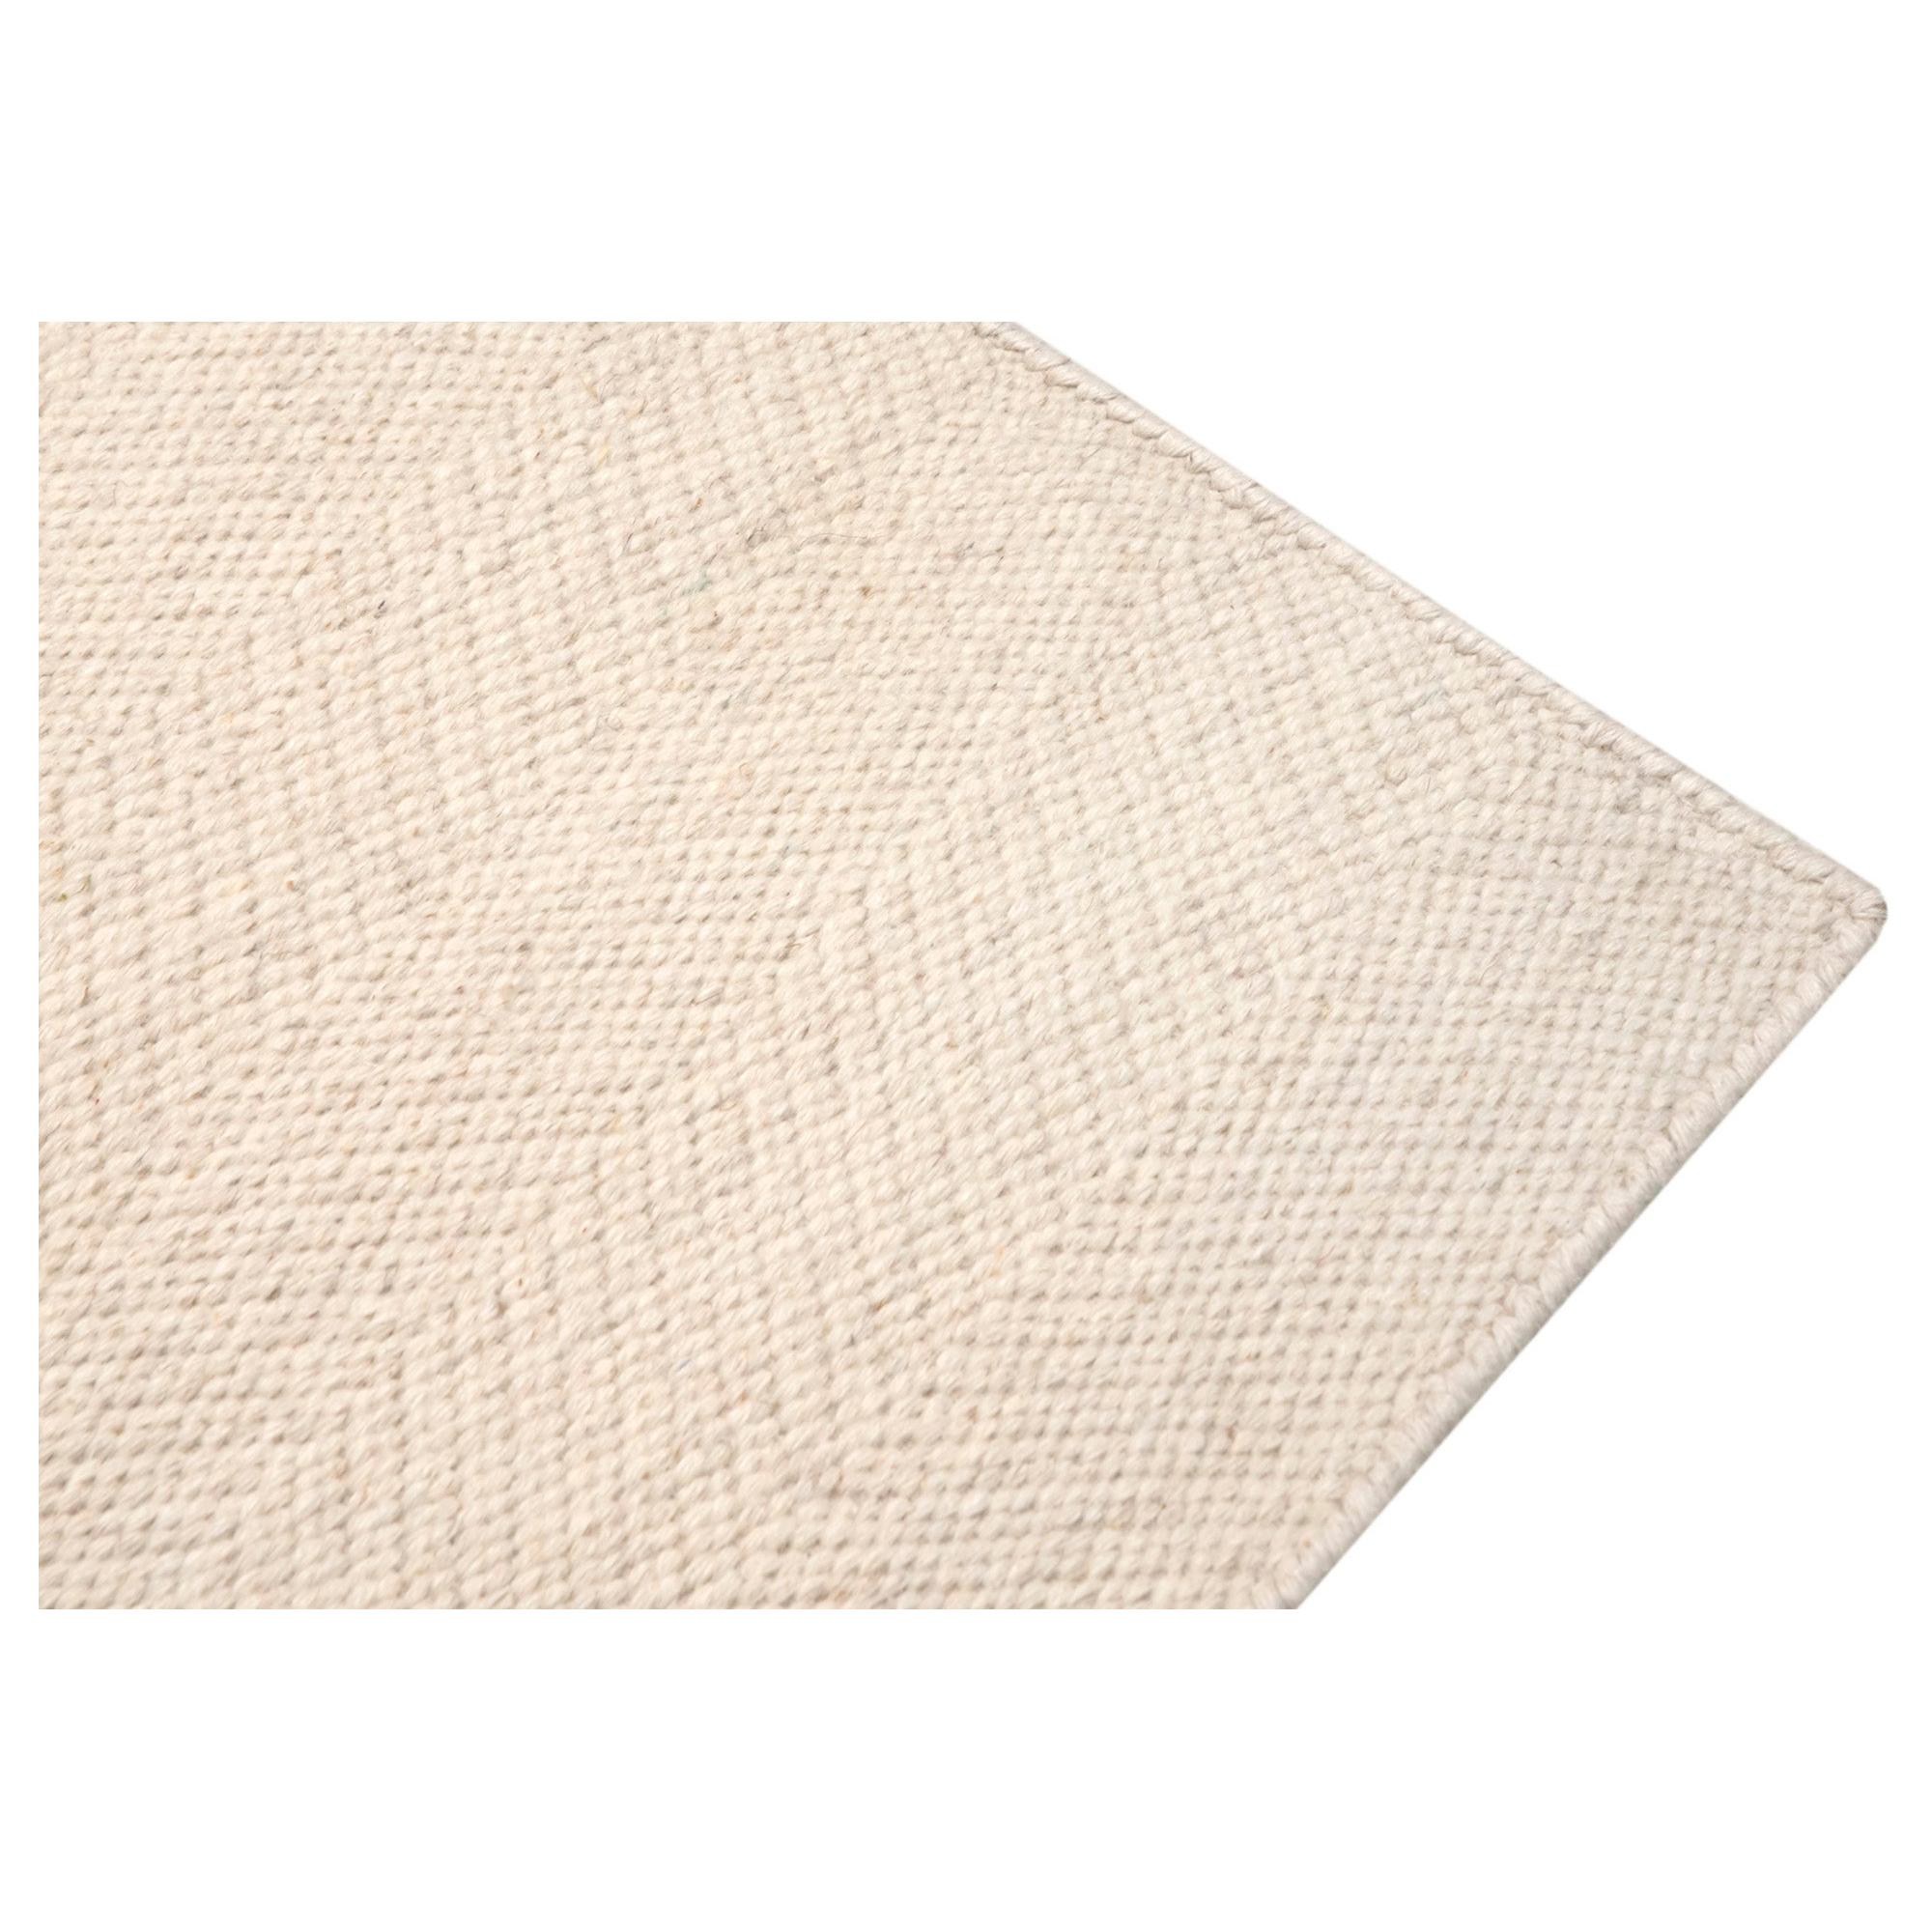 Moderner handgewebter Dhurrie-Teppich aus Wolle Spike Elfenbein Plain